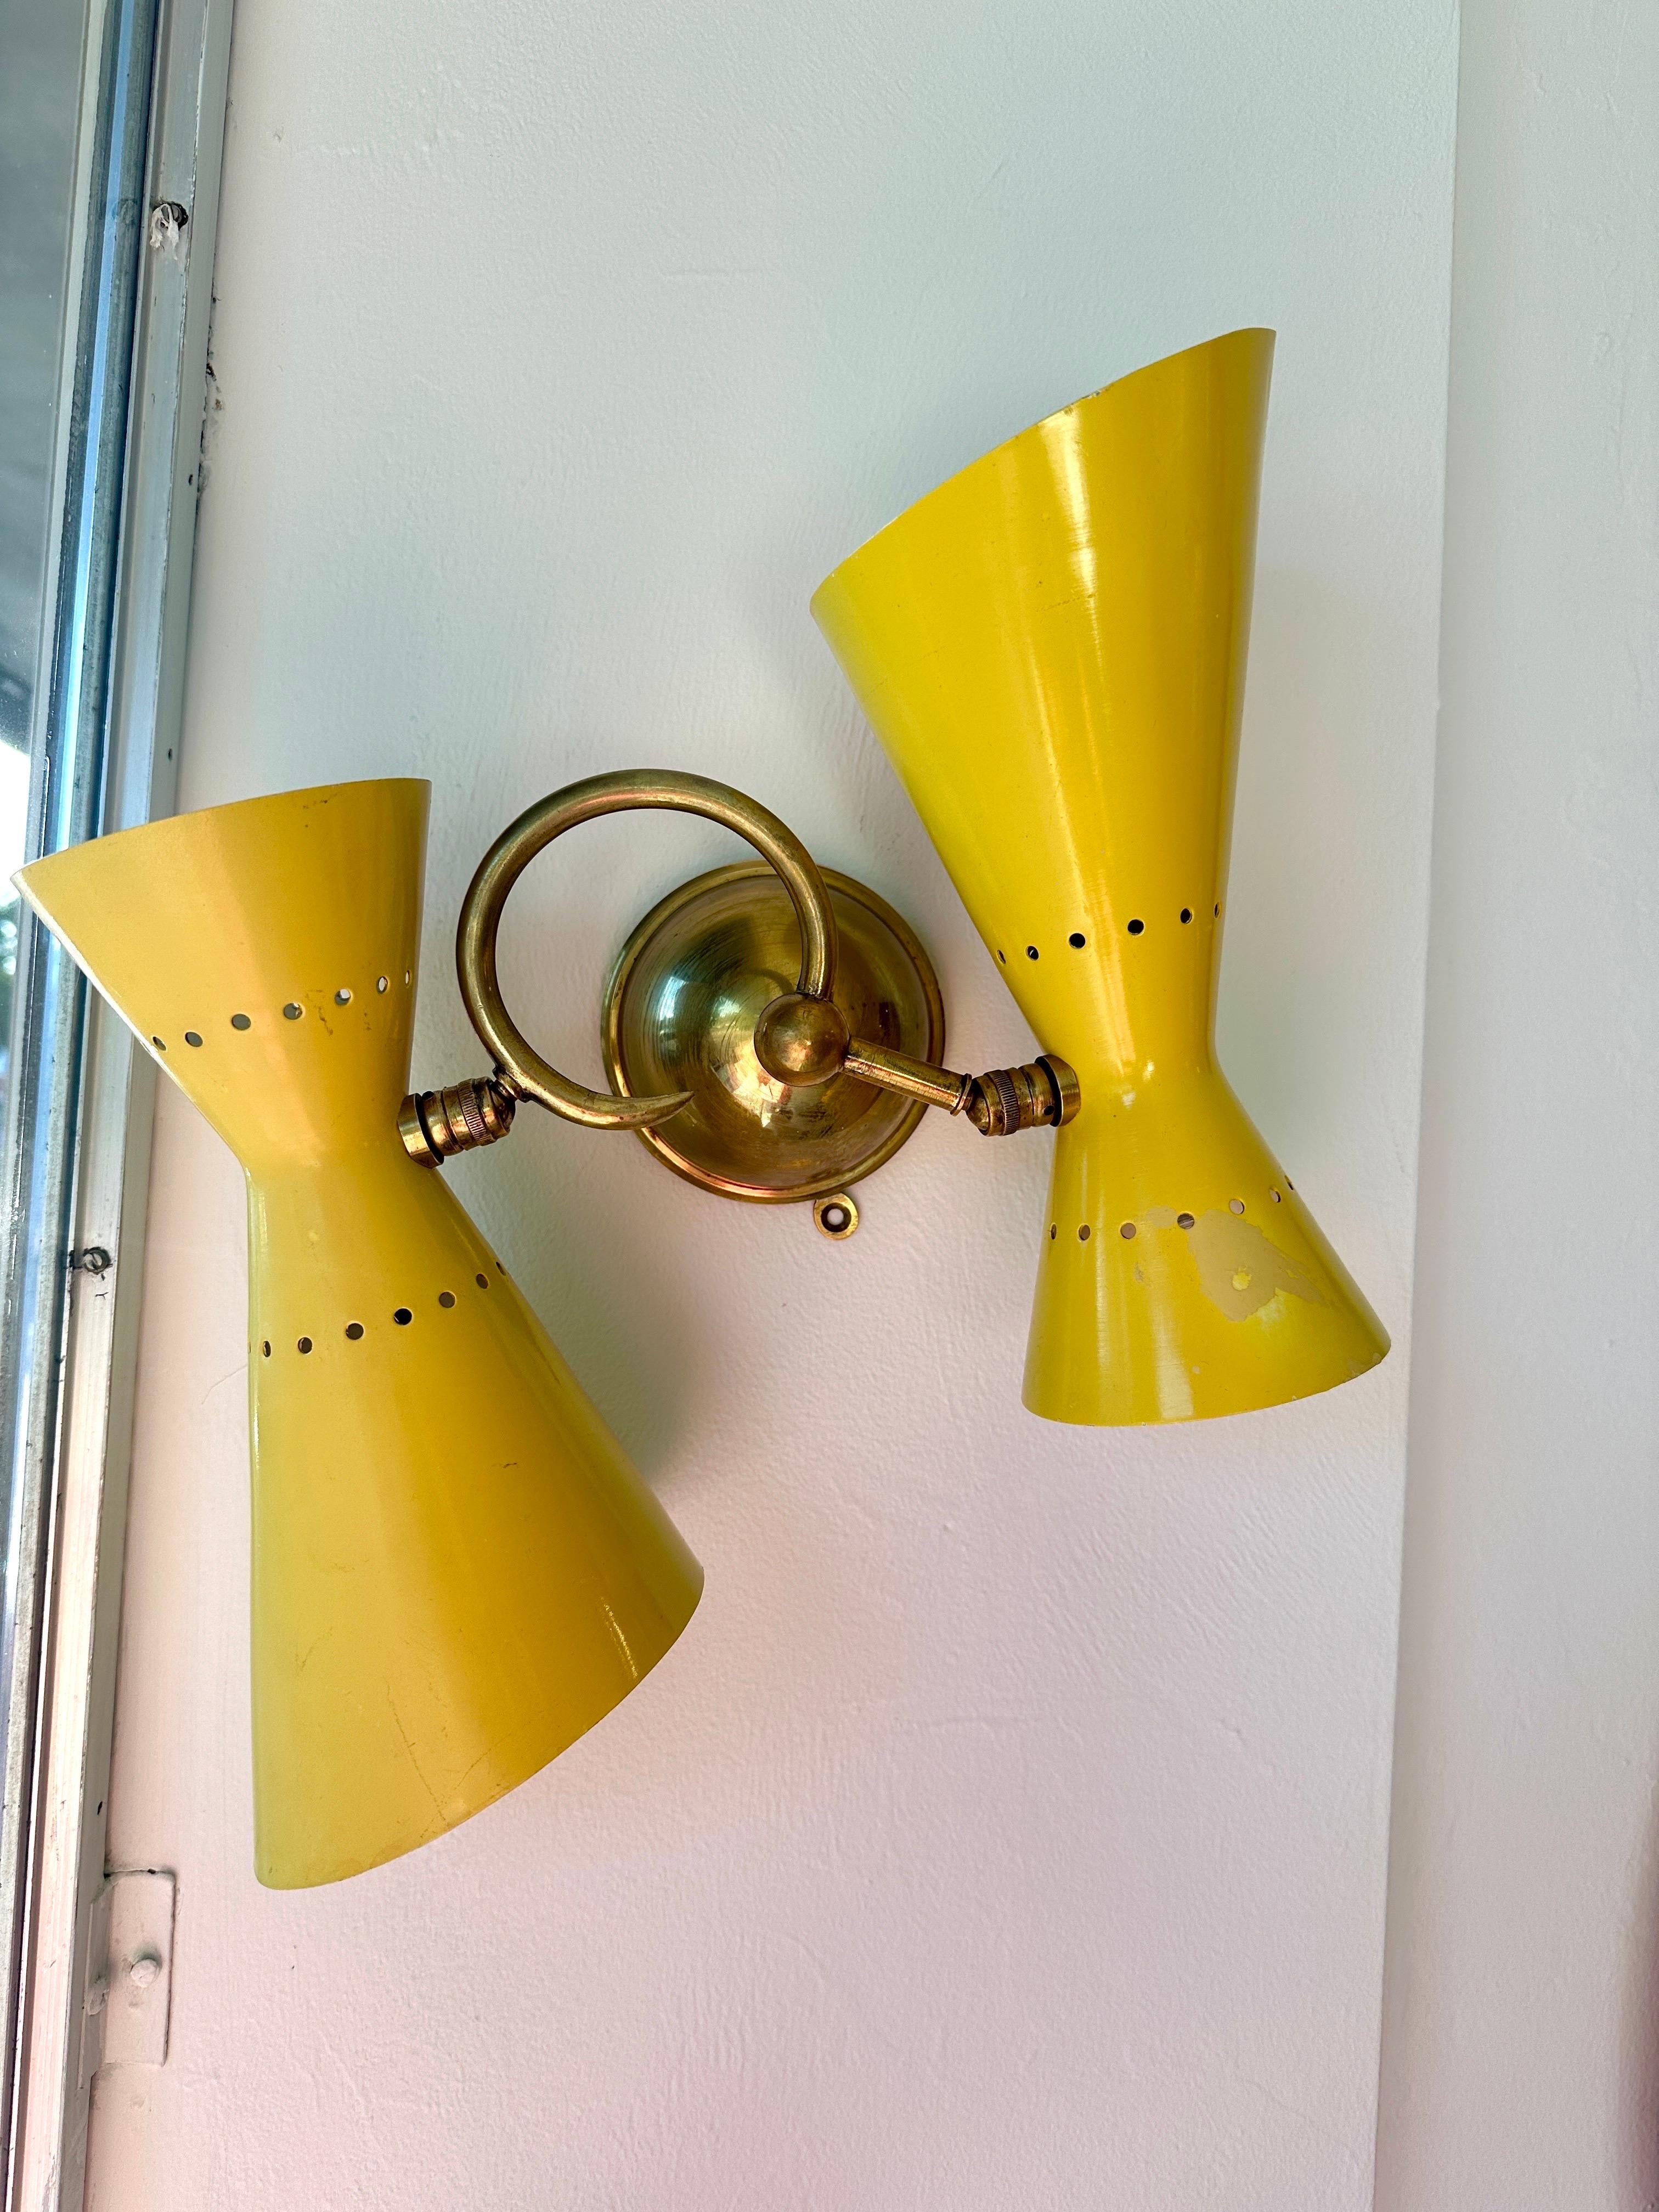 Nous proposons ici des appliques très FUN Stilnovo vintafe à cône perforé en jaune vif d'origine. La fixation murale en laiton et les bras courbés maintiennent ces cônes en métal jaune qui sont chacun des lumières doubles (haut et bas) - total de 4